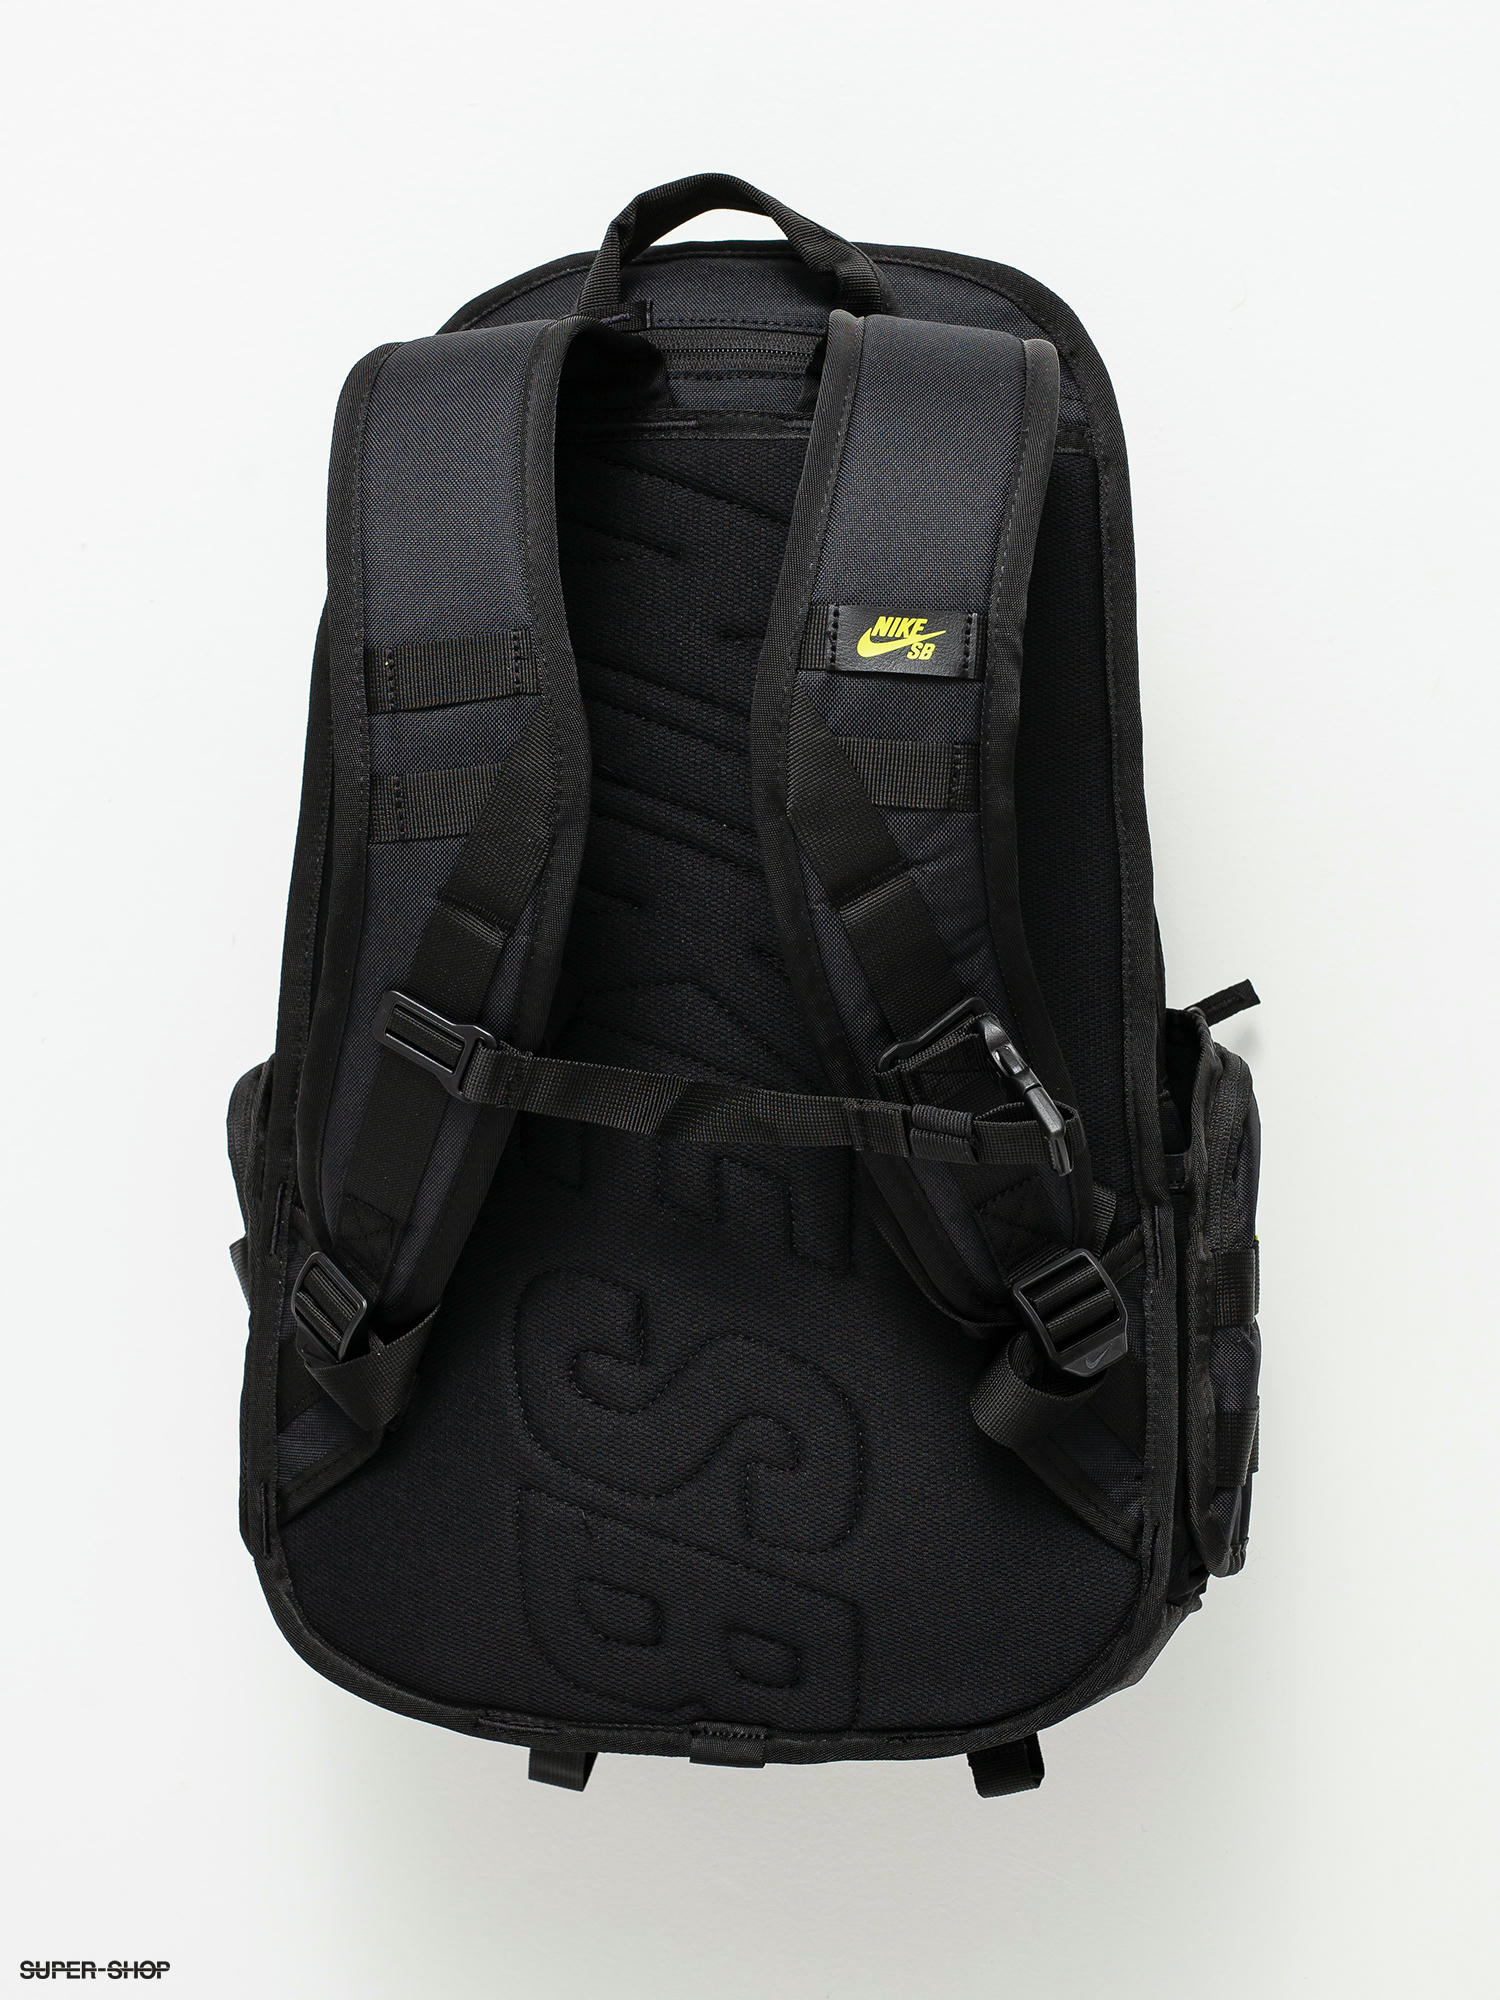 Nike SB Burgundy Backpack Accessories Backpacks at Westside Tarpon